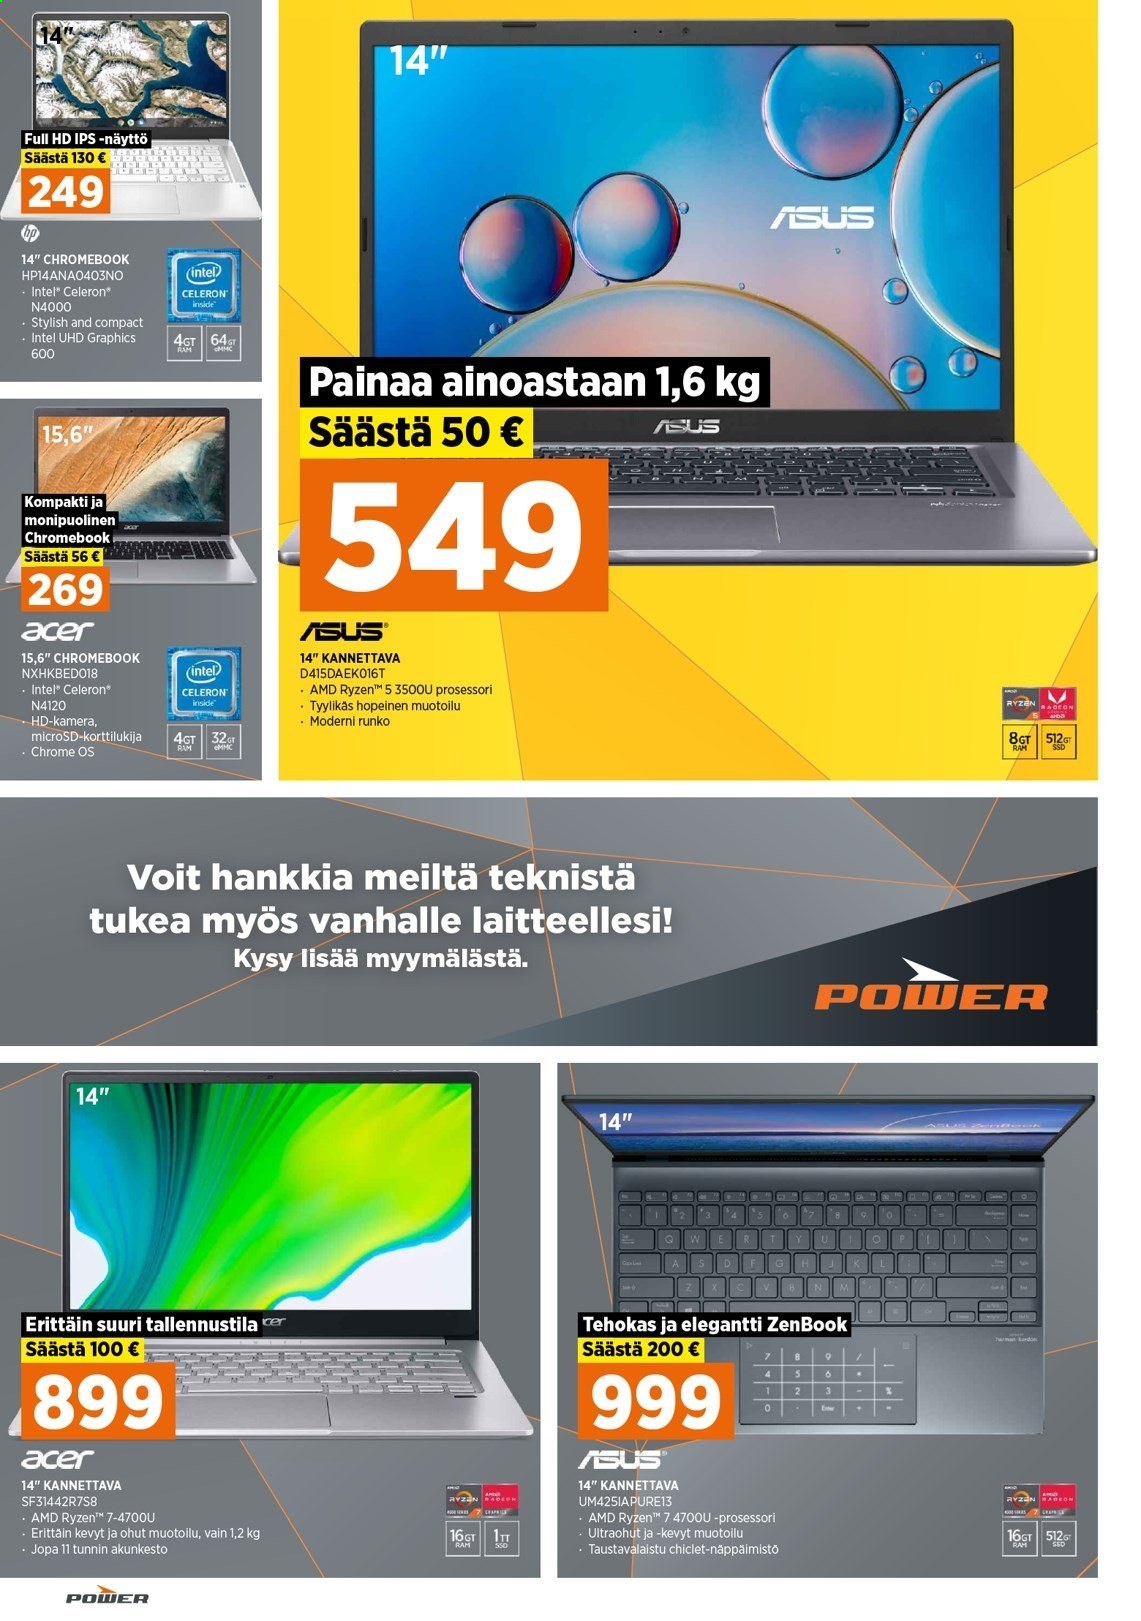 thumbnail - Power tarjoukset  - 01.02.2021 - 07.02.2021 - Tarjoustuotteet - Asus, Acer, Chromebook, Intel, Ryzen, näppäimistö. Sivu 12.